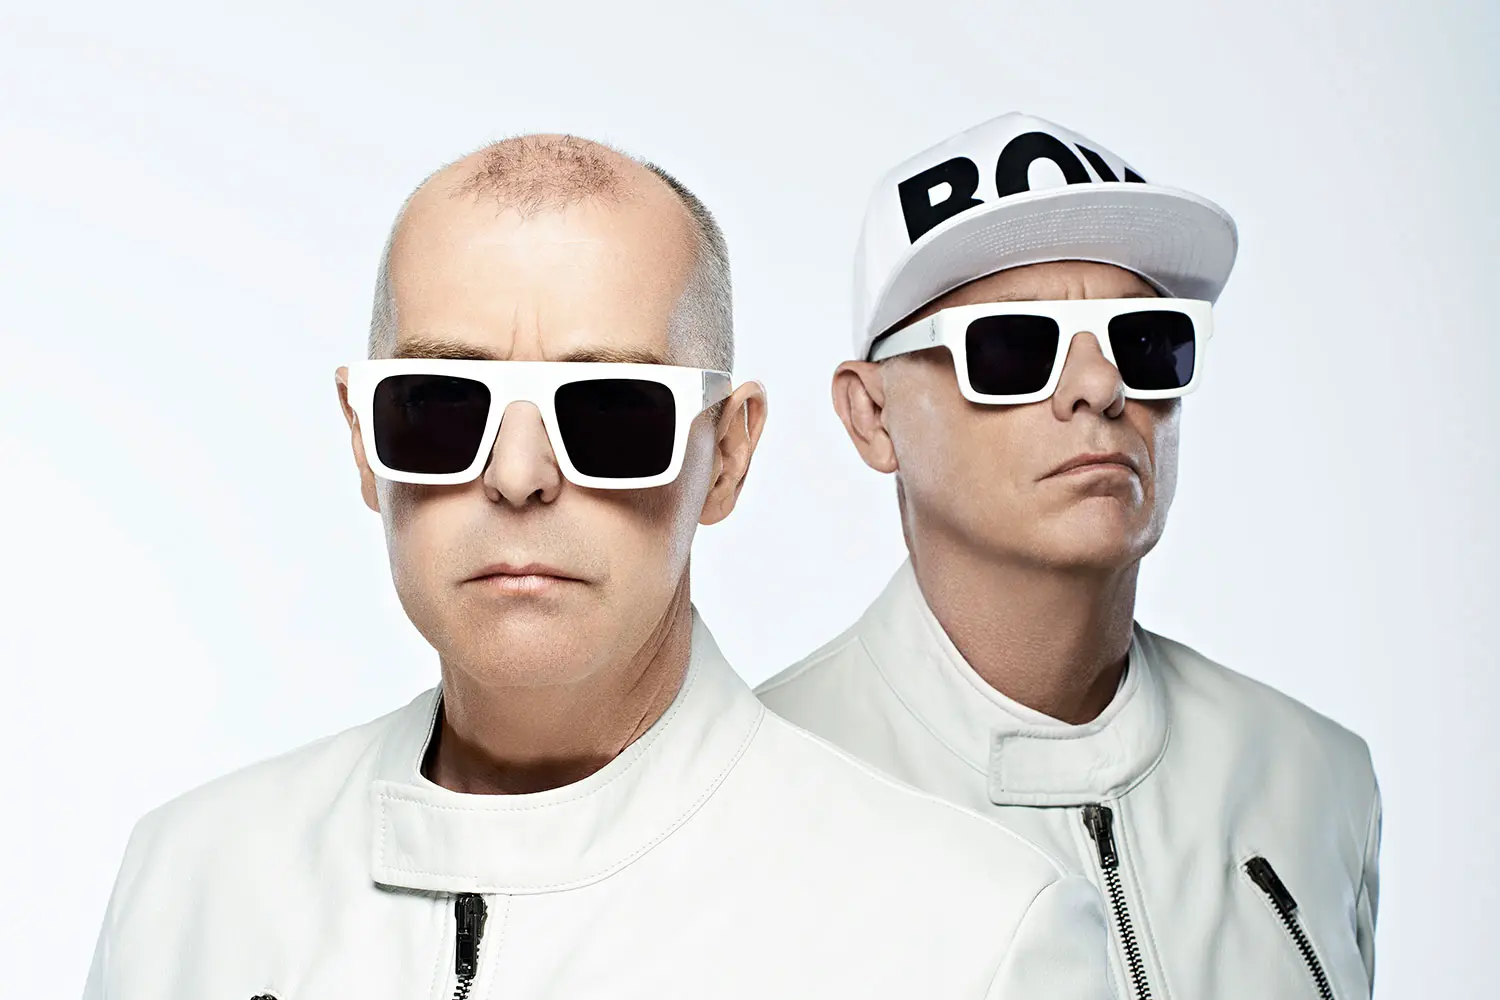 Pet Shop Boys (Пет Шоп Бойз): Биография группы